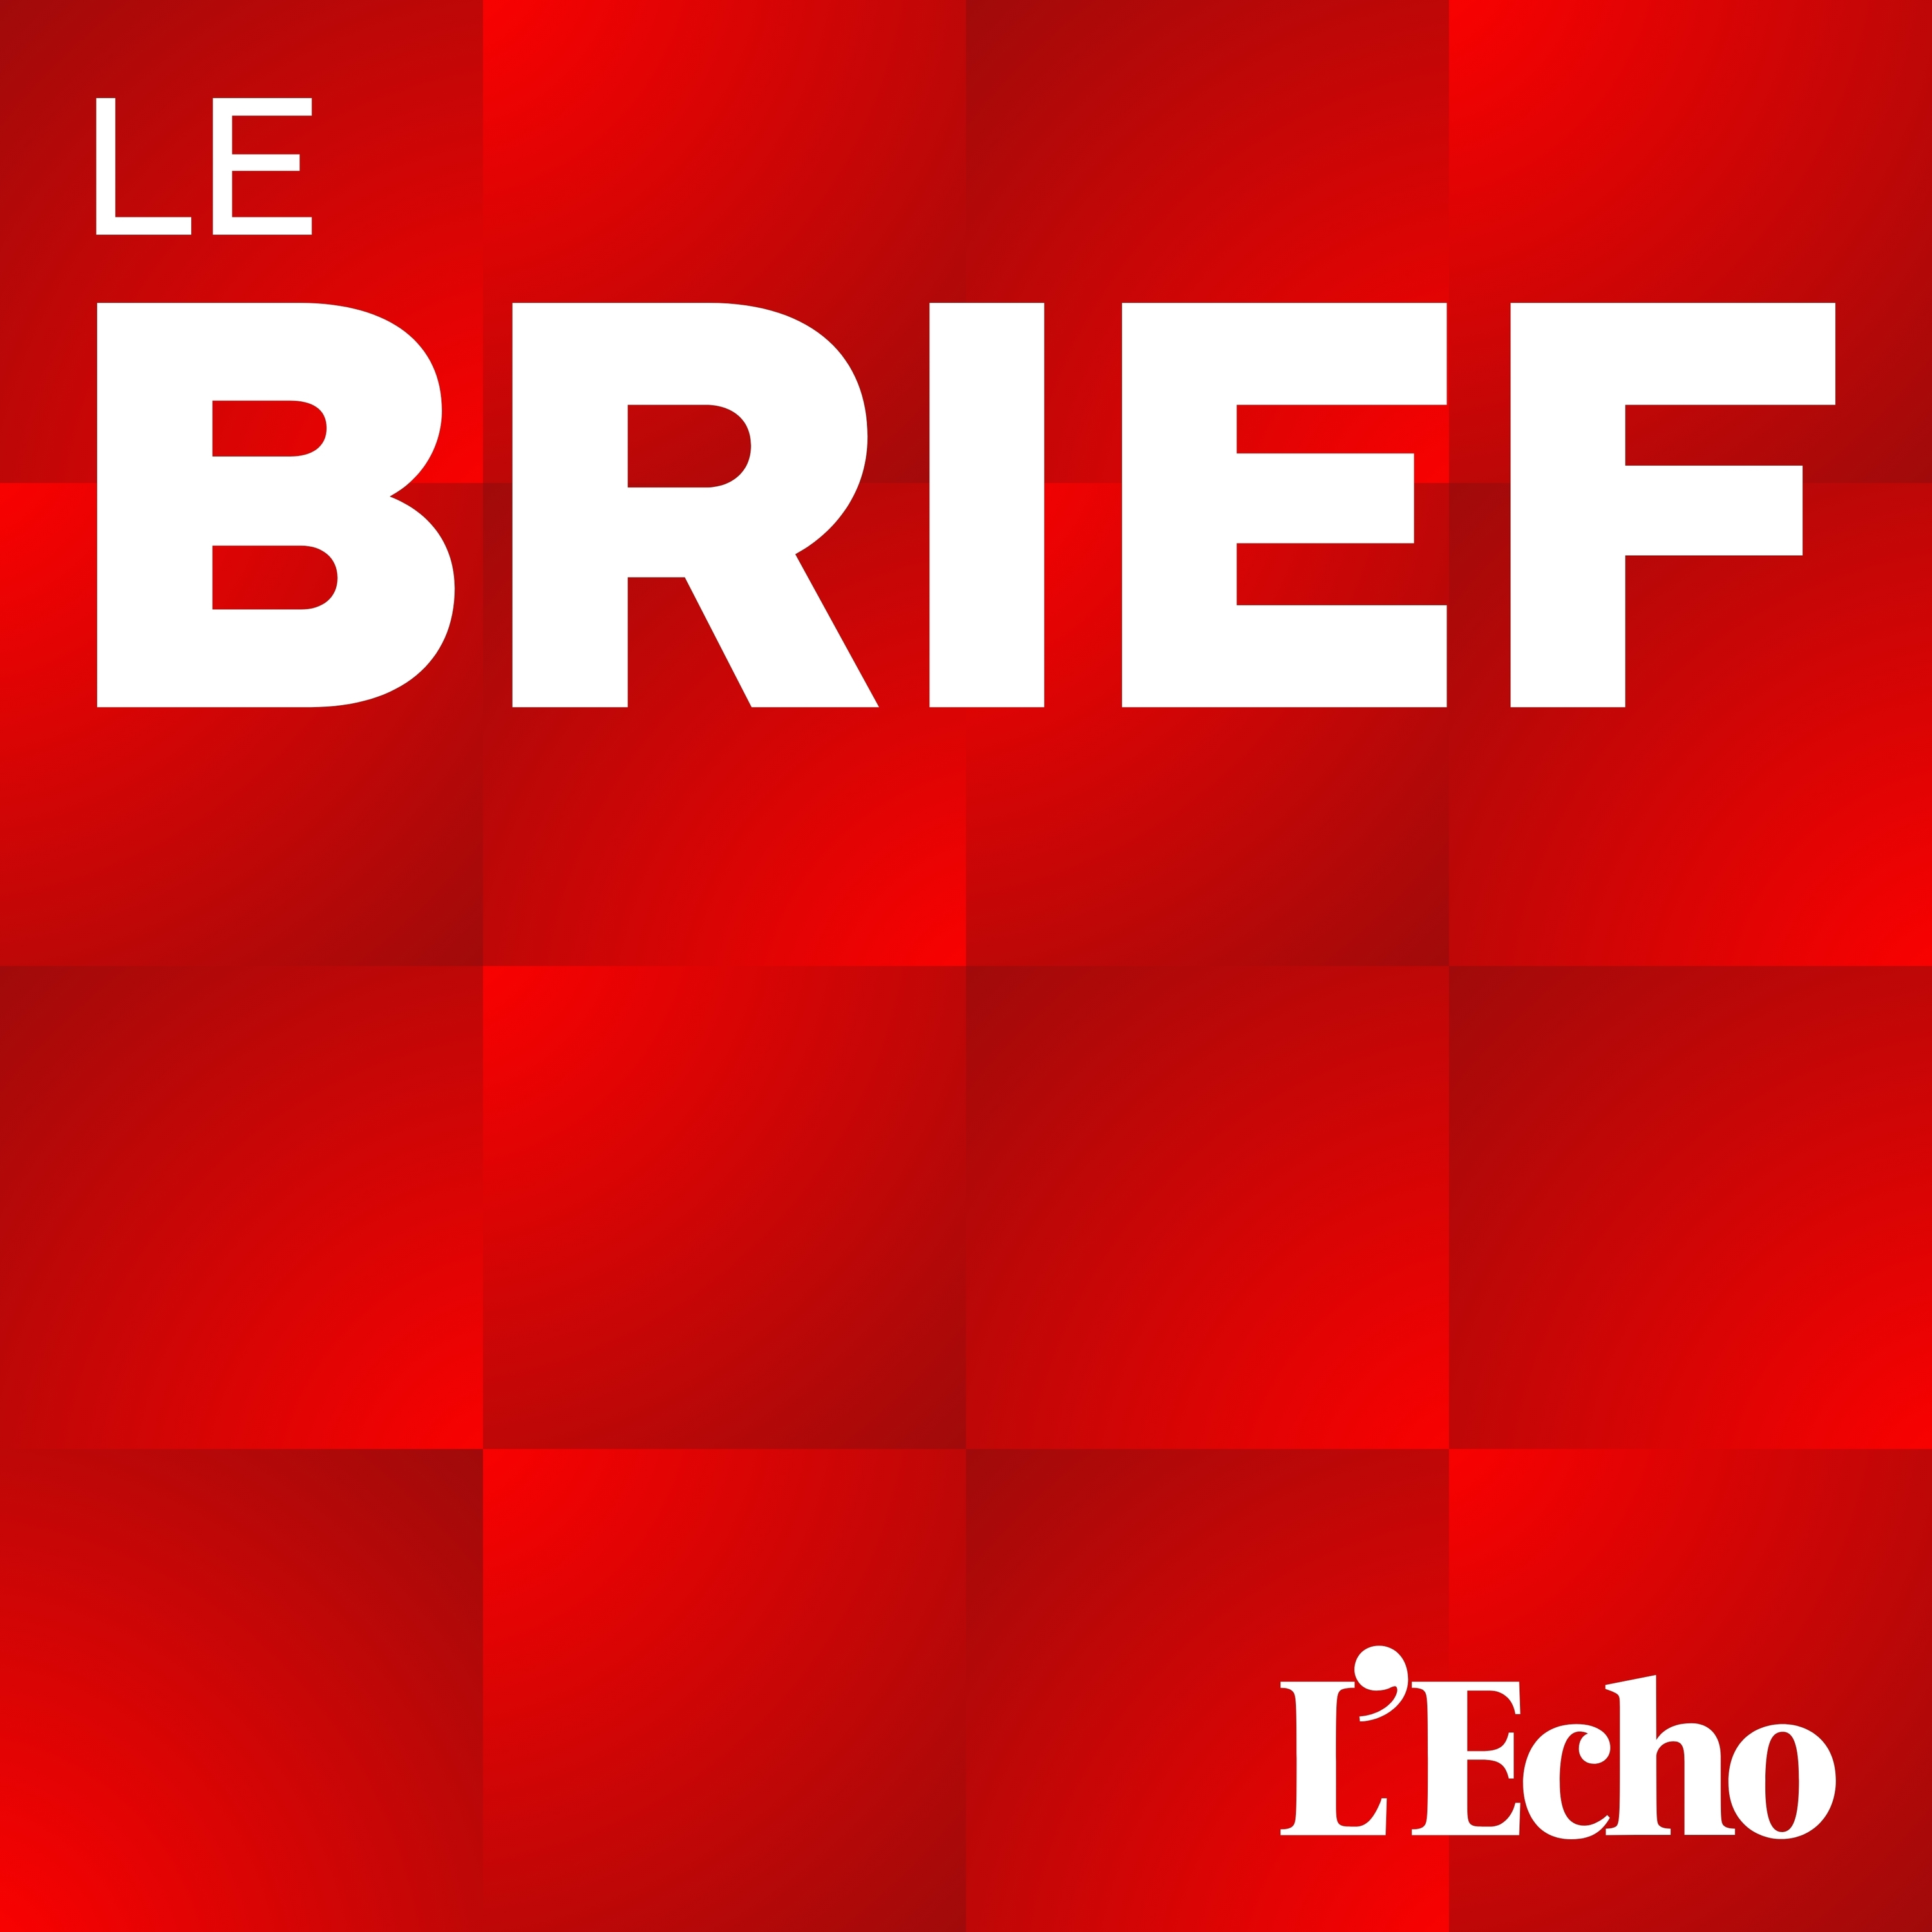 Partenariat franco-belge dans la défense | Tous les projecteurs rivés sur Nvidia | Marc Coucke perd une bataille chez Unifiedpost